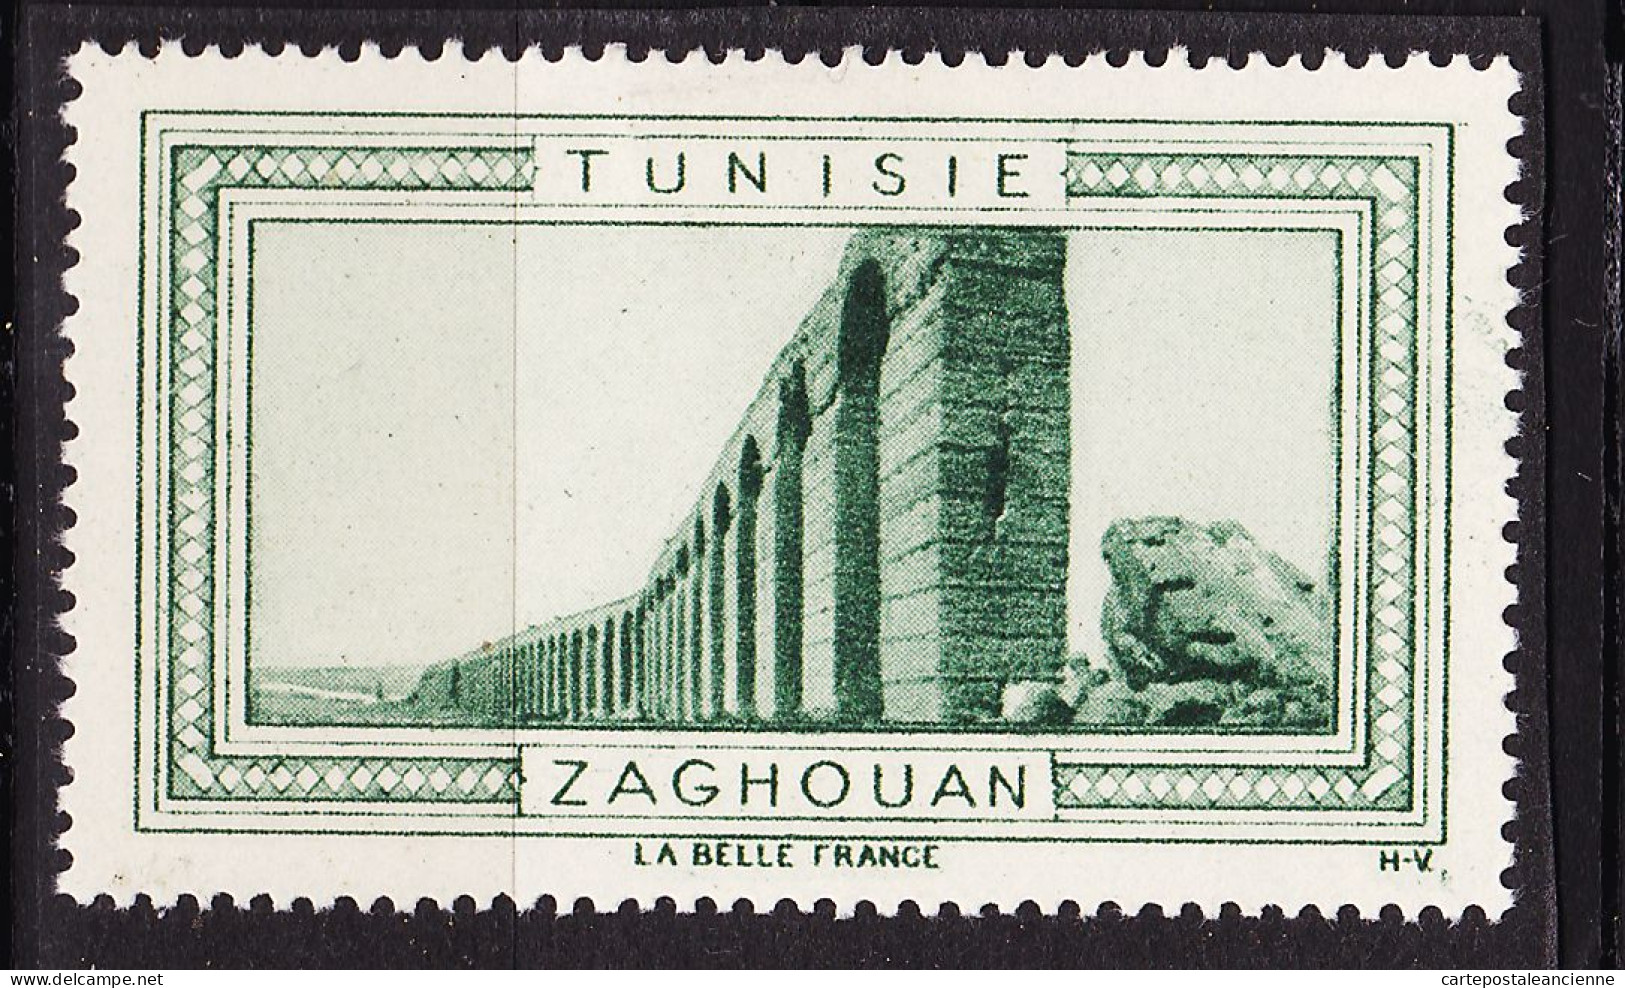 13011 ● ZAGHOUAN TUNISIE Vignette De Collection LA BELLE FRANCE 1925s H-V Helio VAUGIRARD PARIS Erinnophilie - Toerisme (Vignetten)